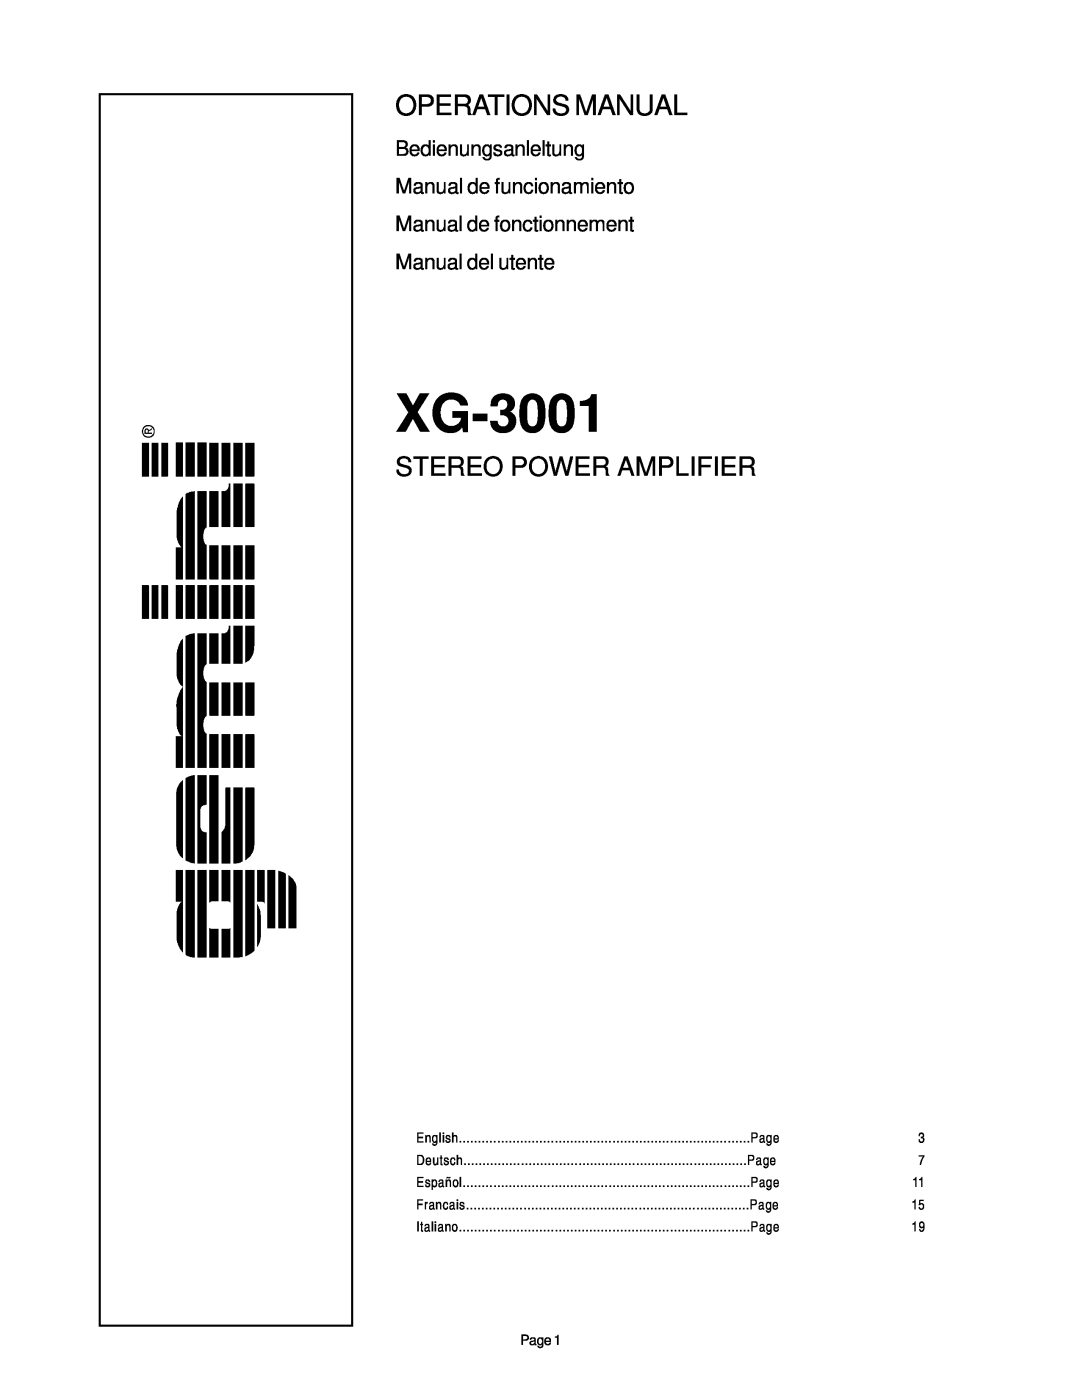 Gemini XG-3001 manual Operations Manual, Stereo Power Amplifier, Bedienungsanleltung Manual de funcionamiento 